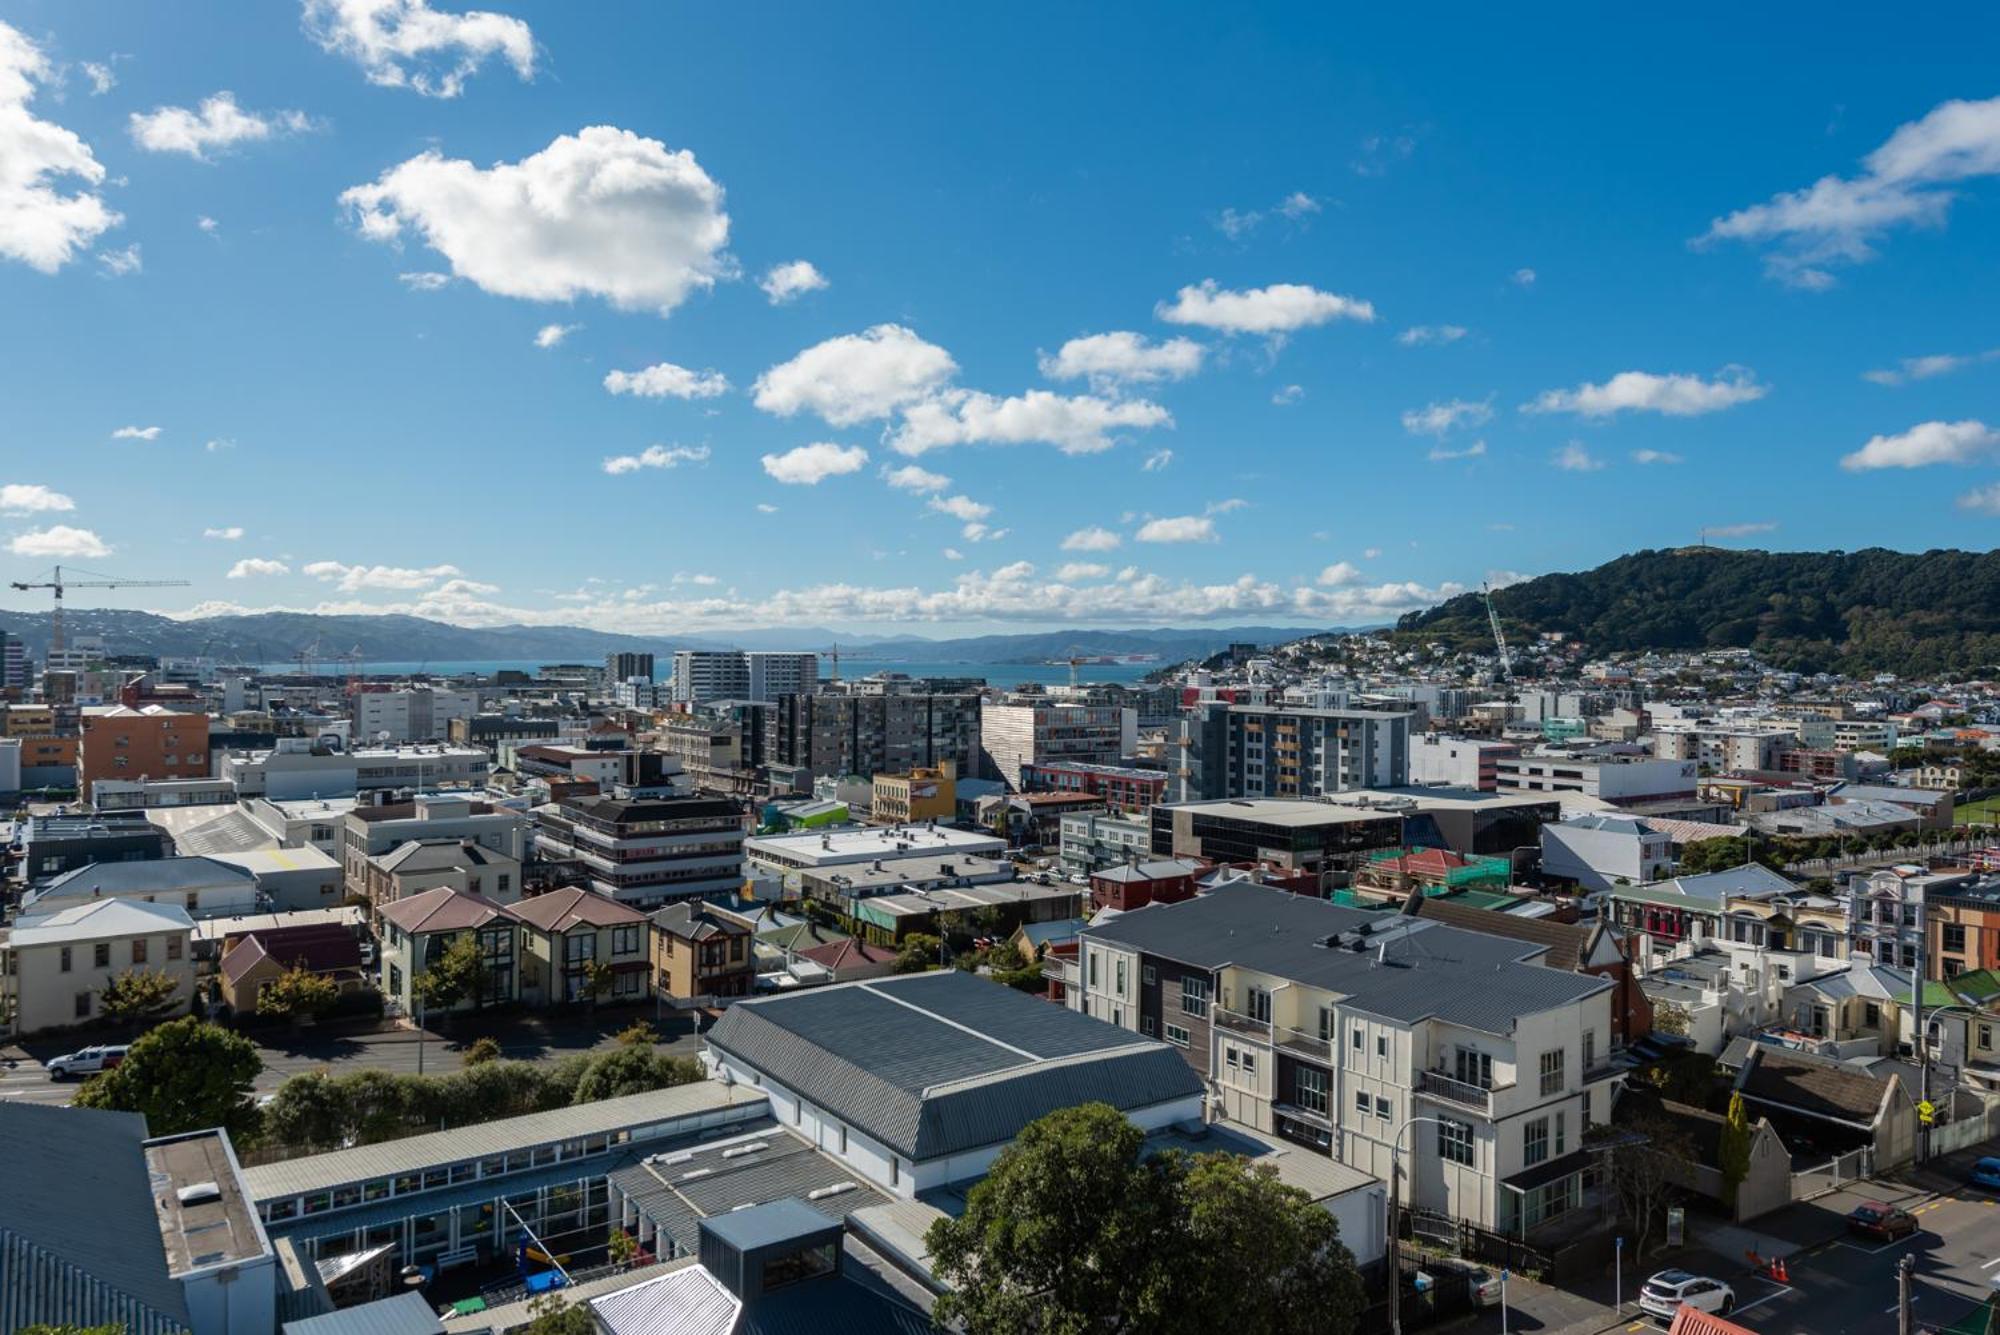 Capital View Motor Inn Wellington Bagian luar foto